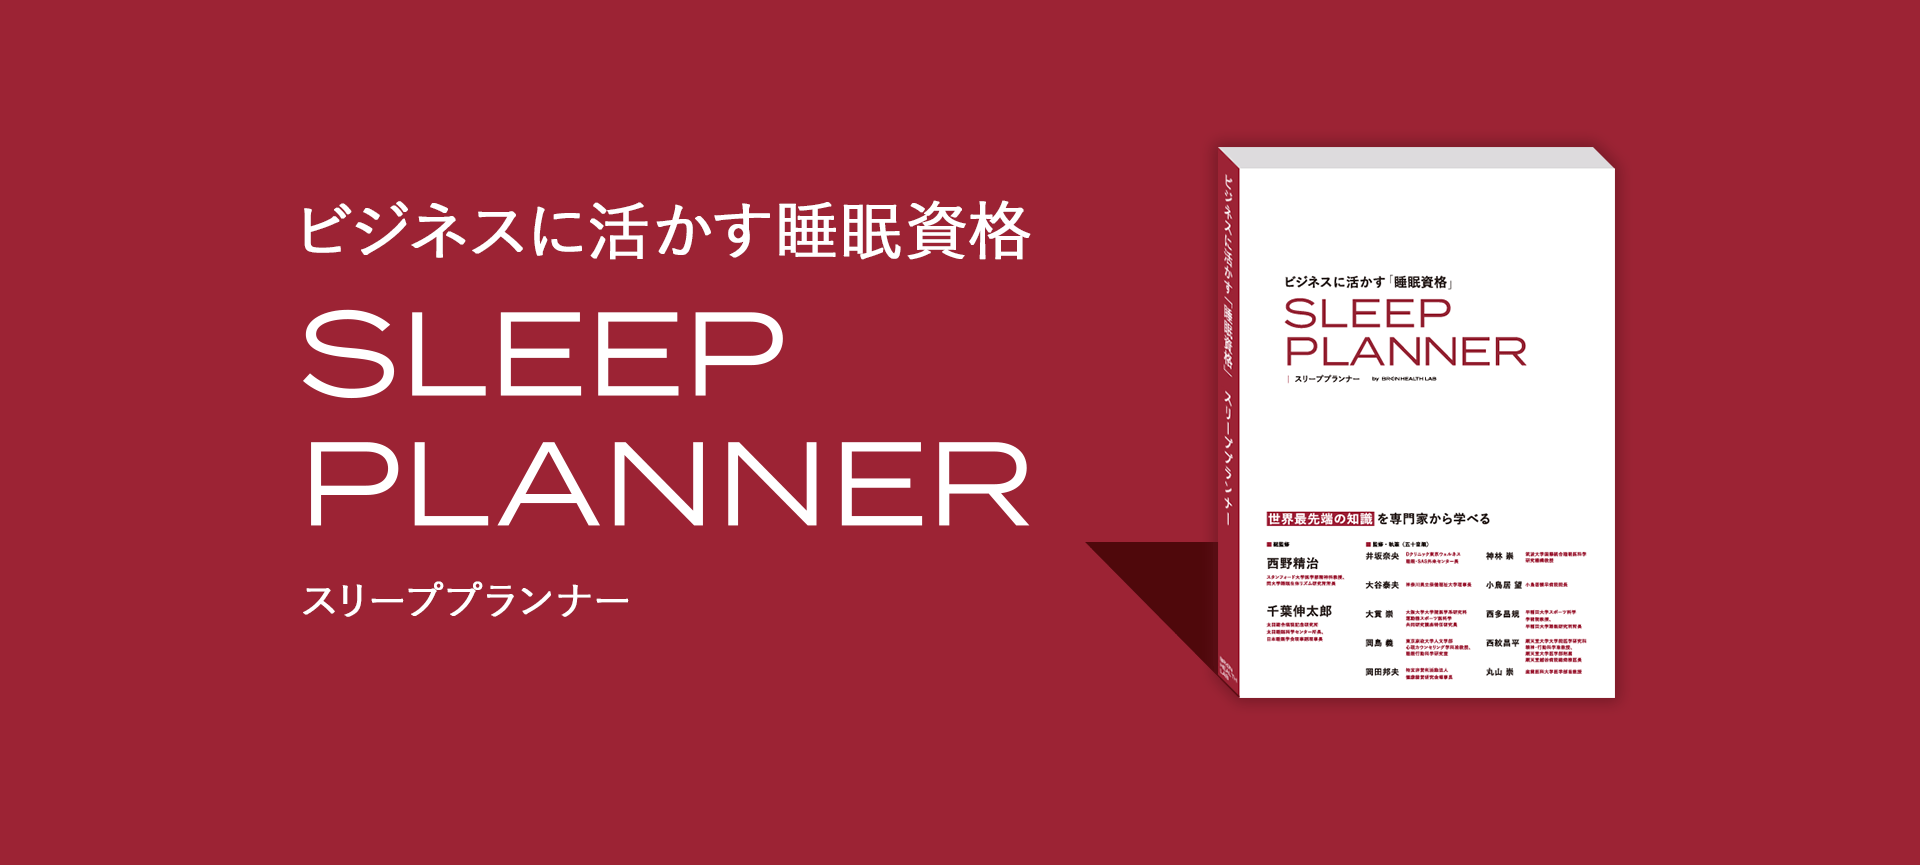 SLEEP PLANNER